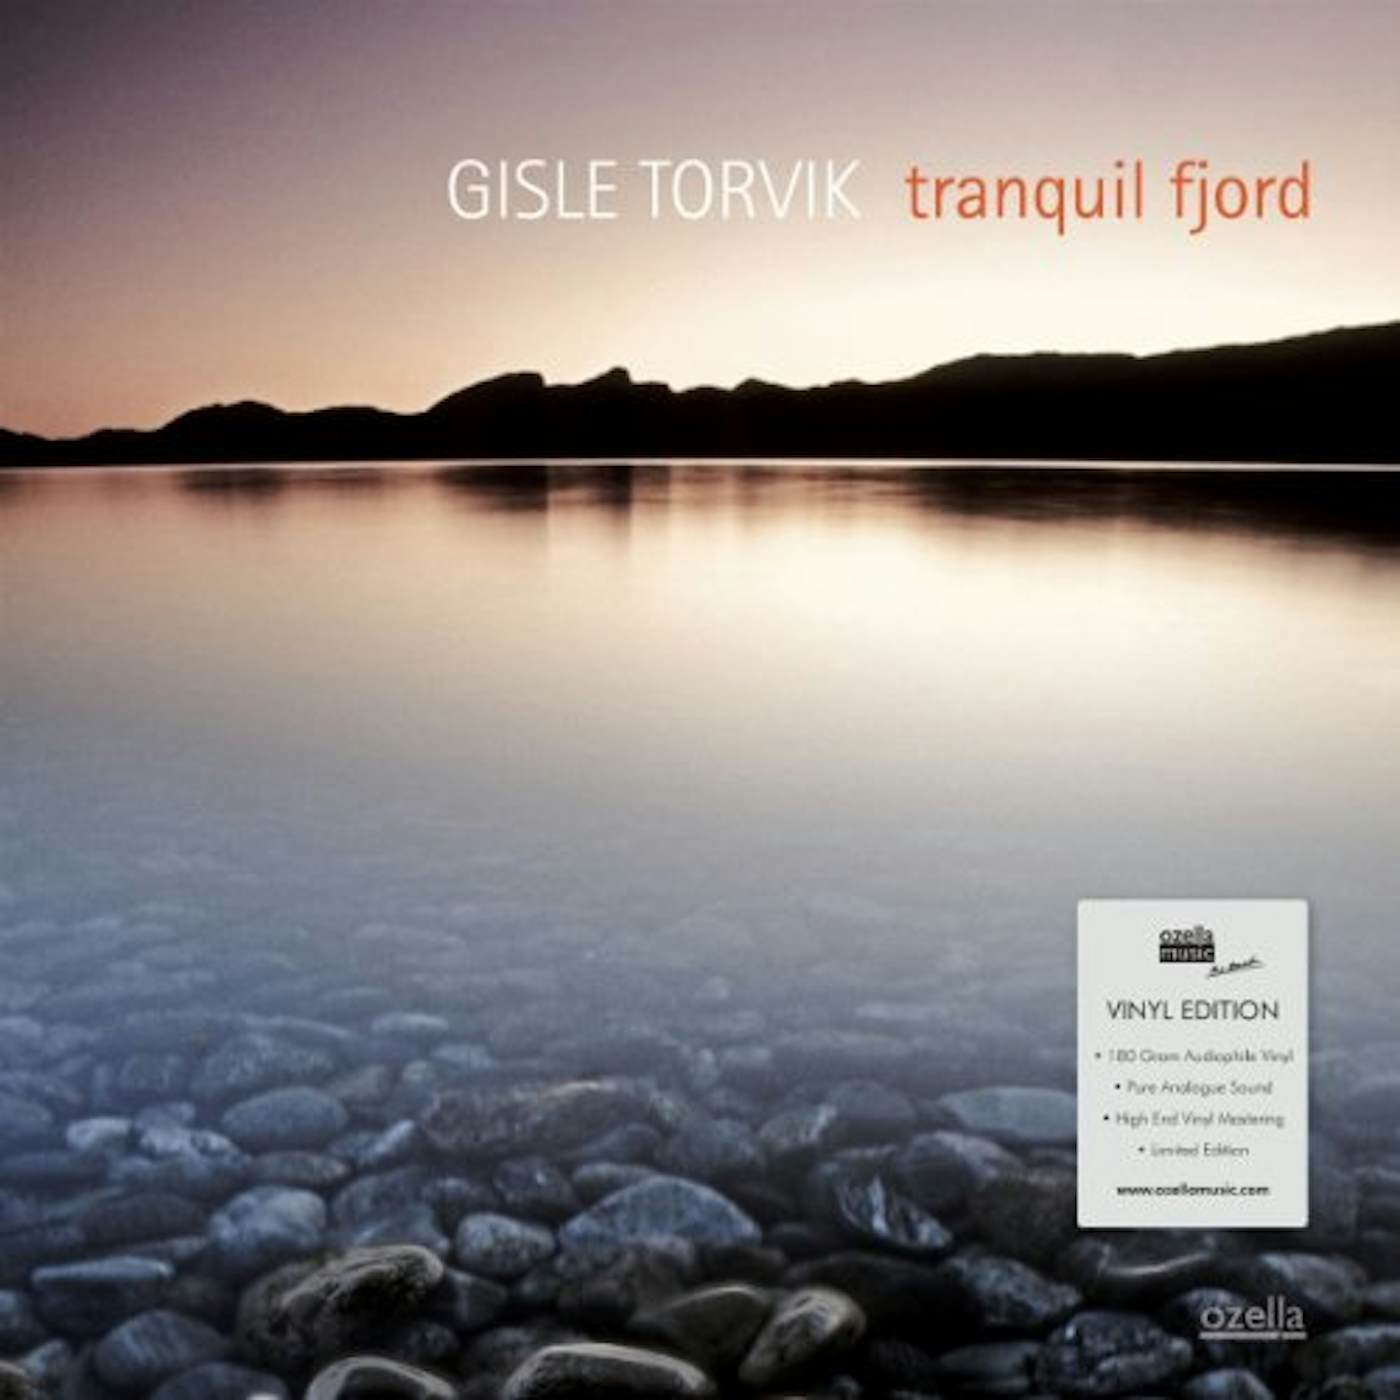 Gisle Torvik Tranquil fjord Vinyl Record